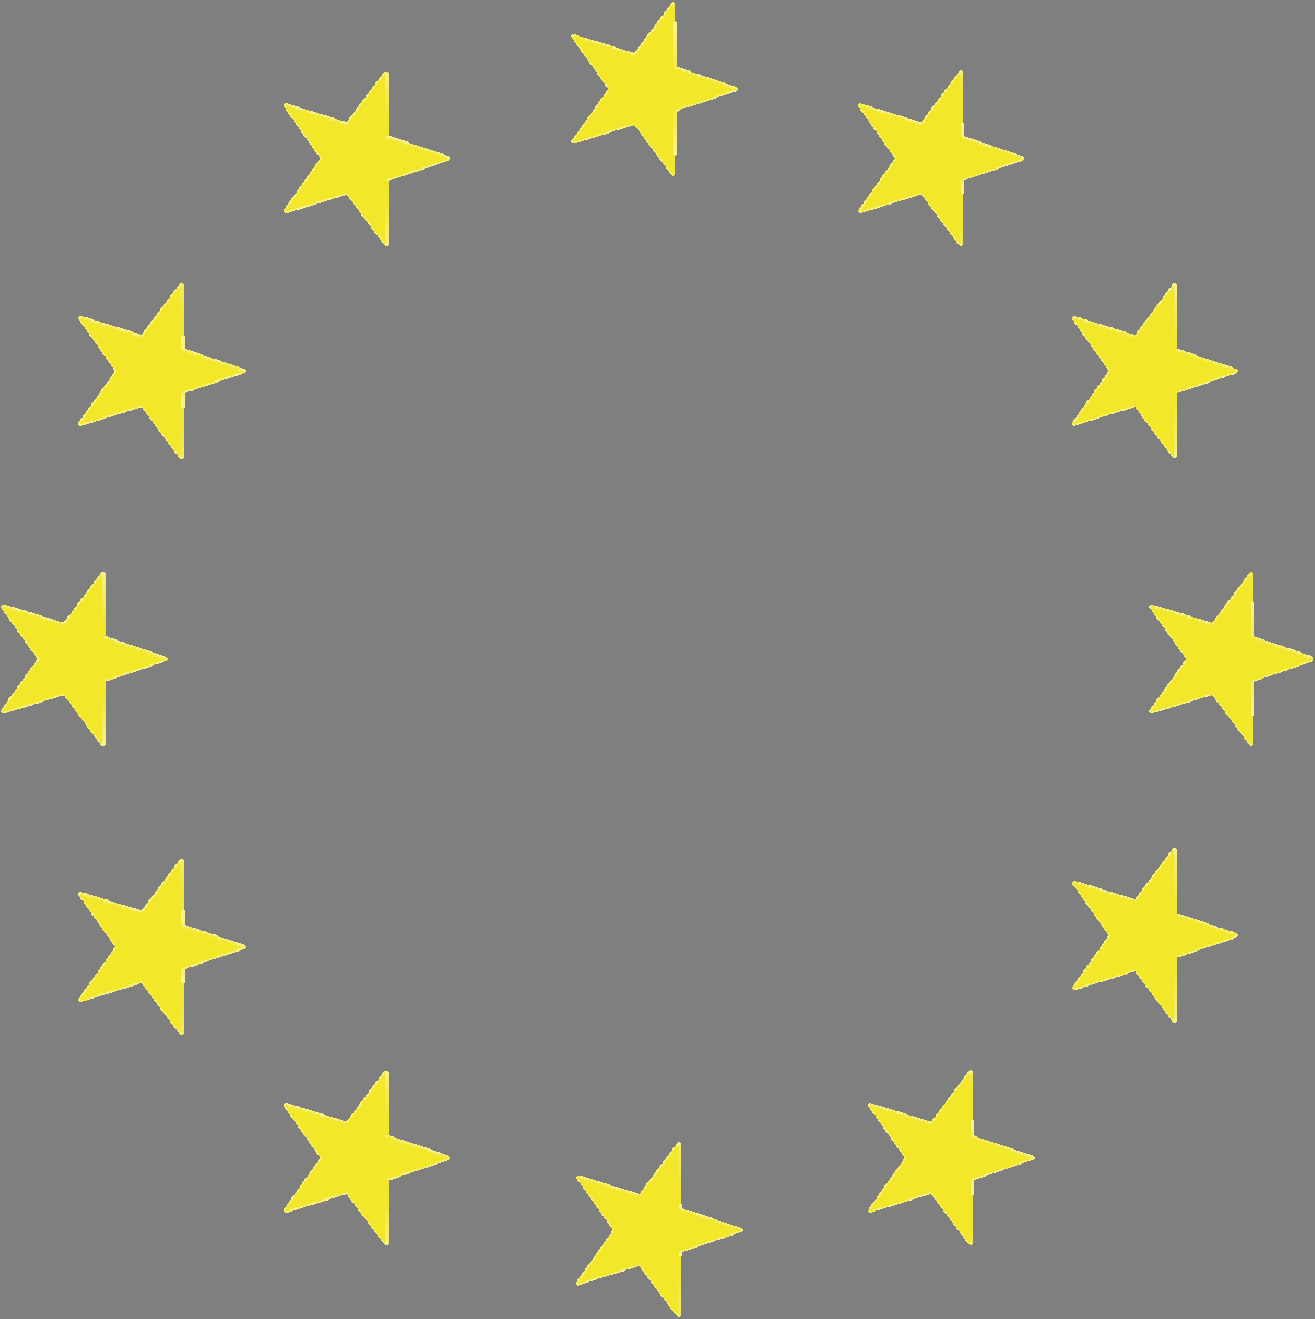 Euroopan Komission arvio: 10-30 prosentissa